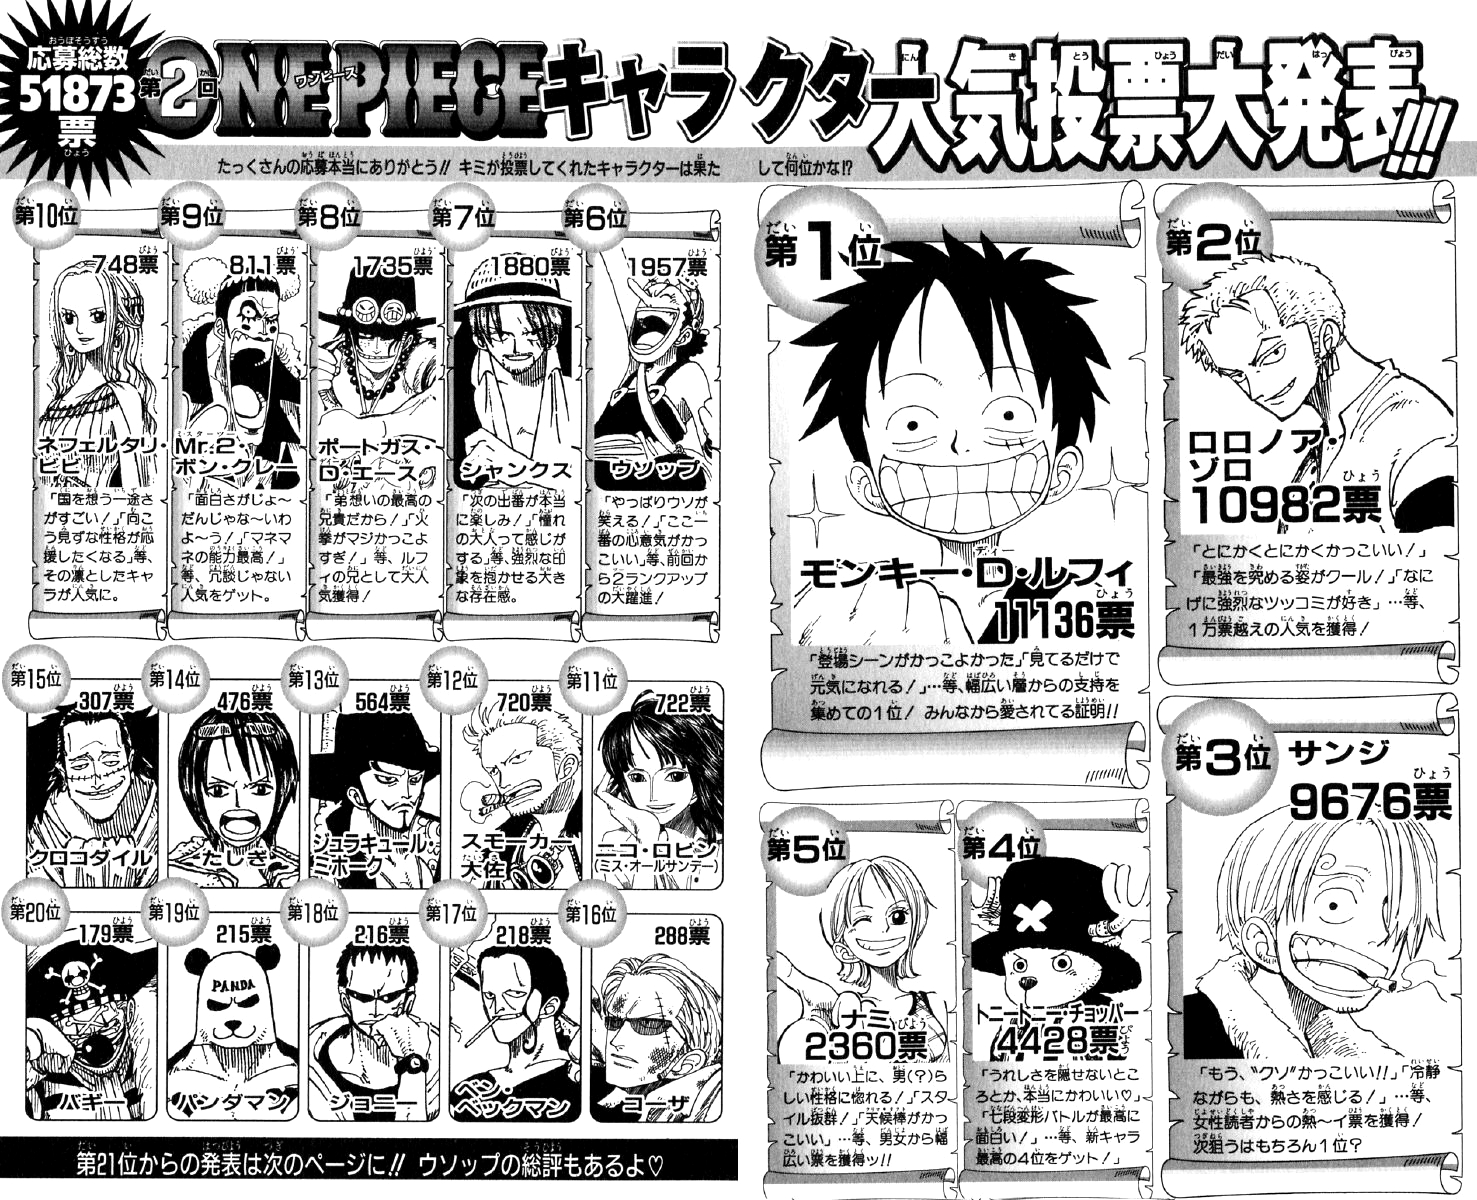 Japanese Anime Jump Comics Manga One Piece Vol 87 Japan Original Ver Collectibles